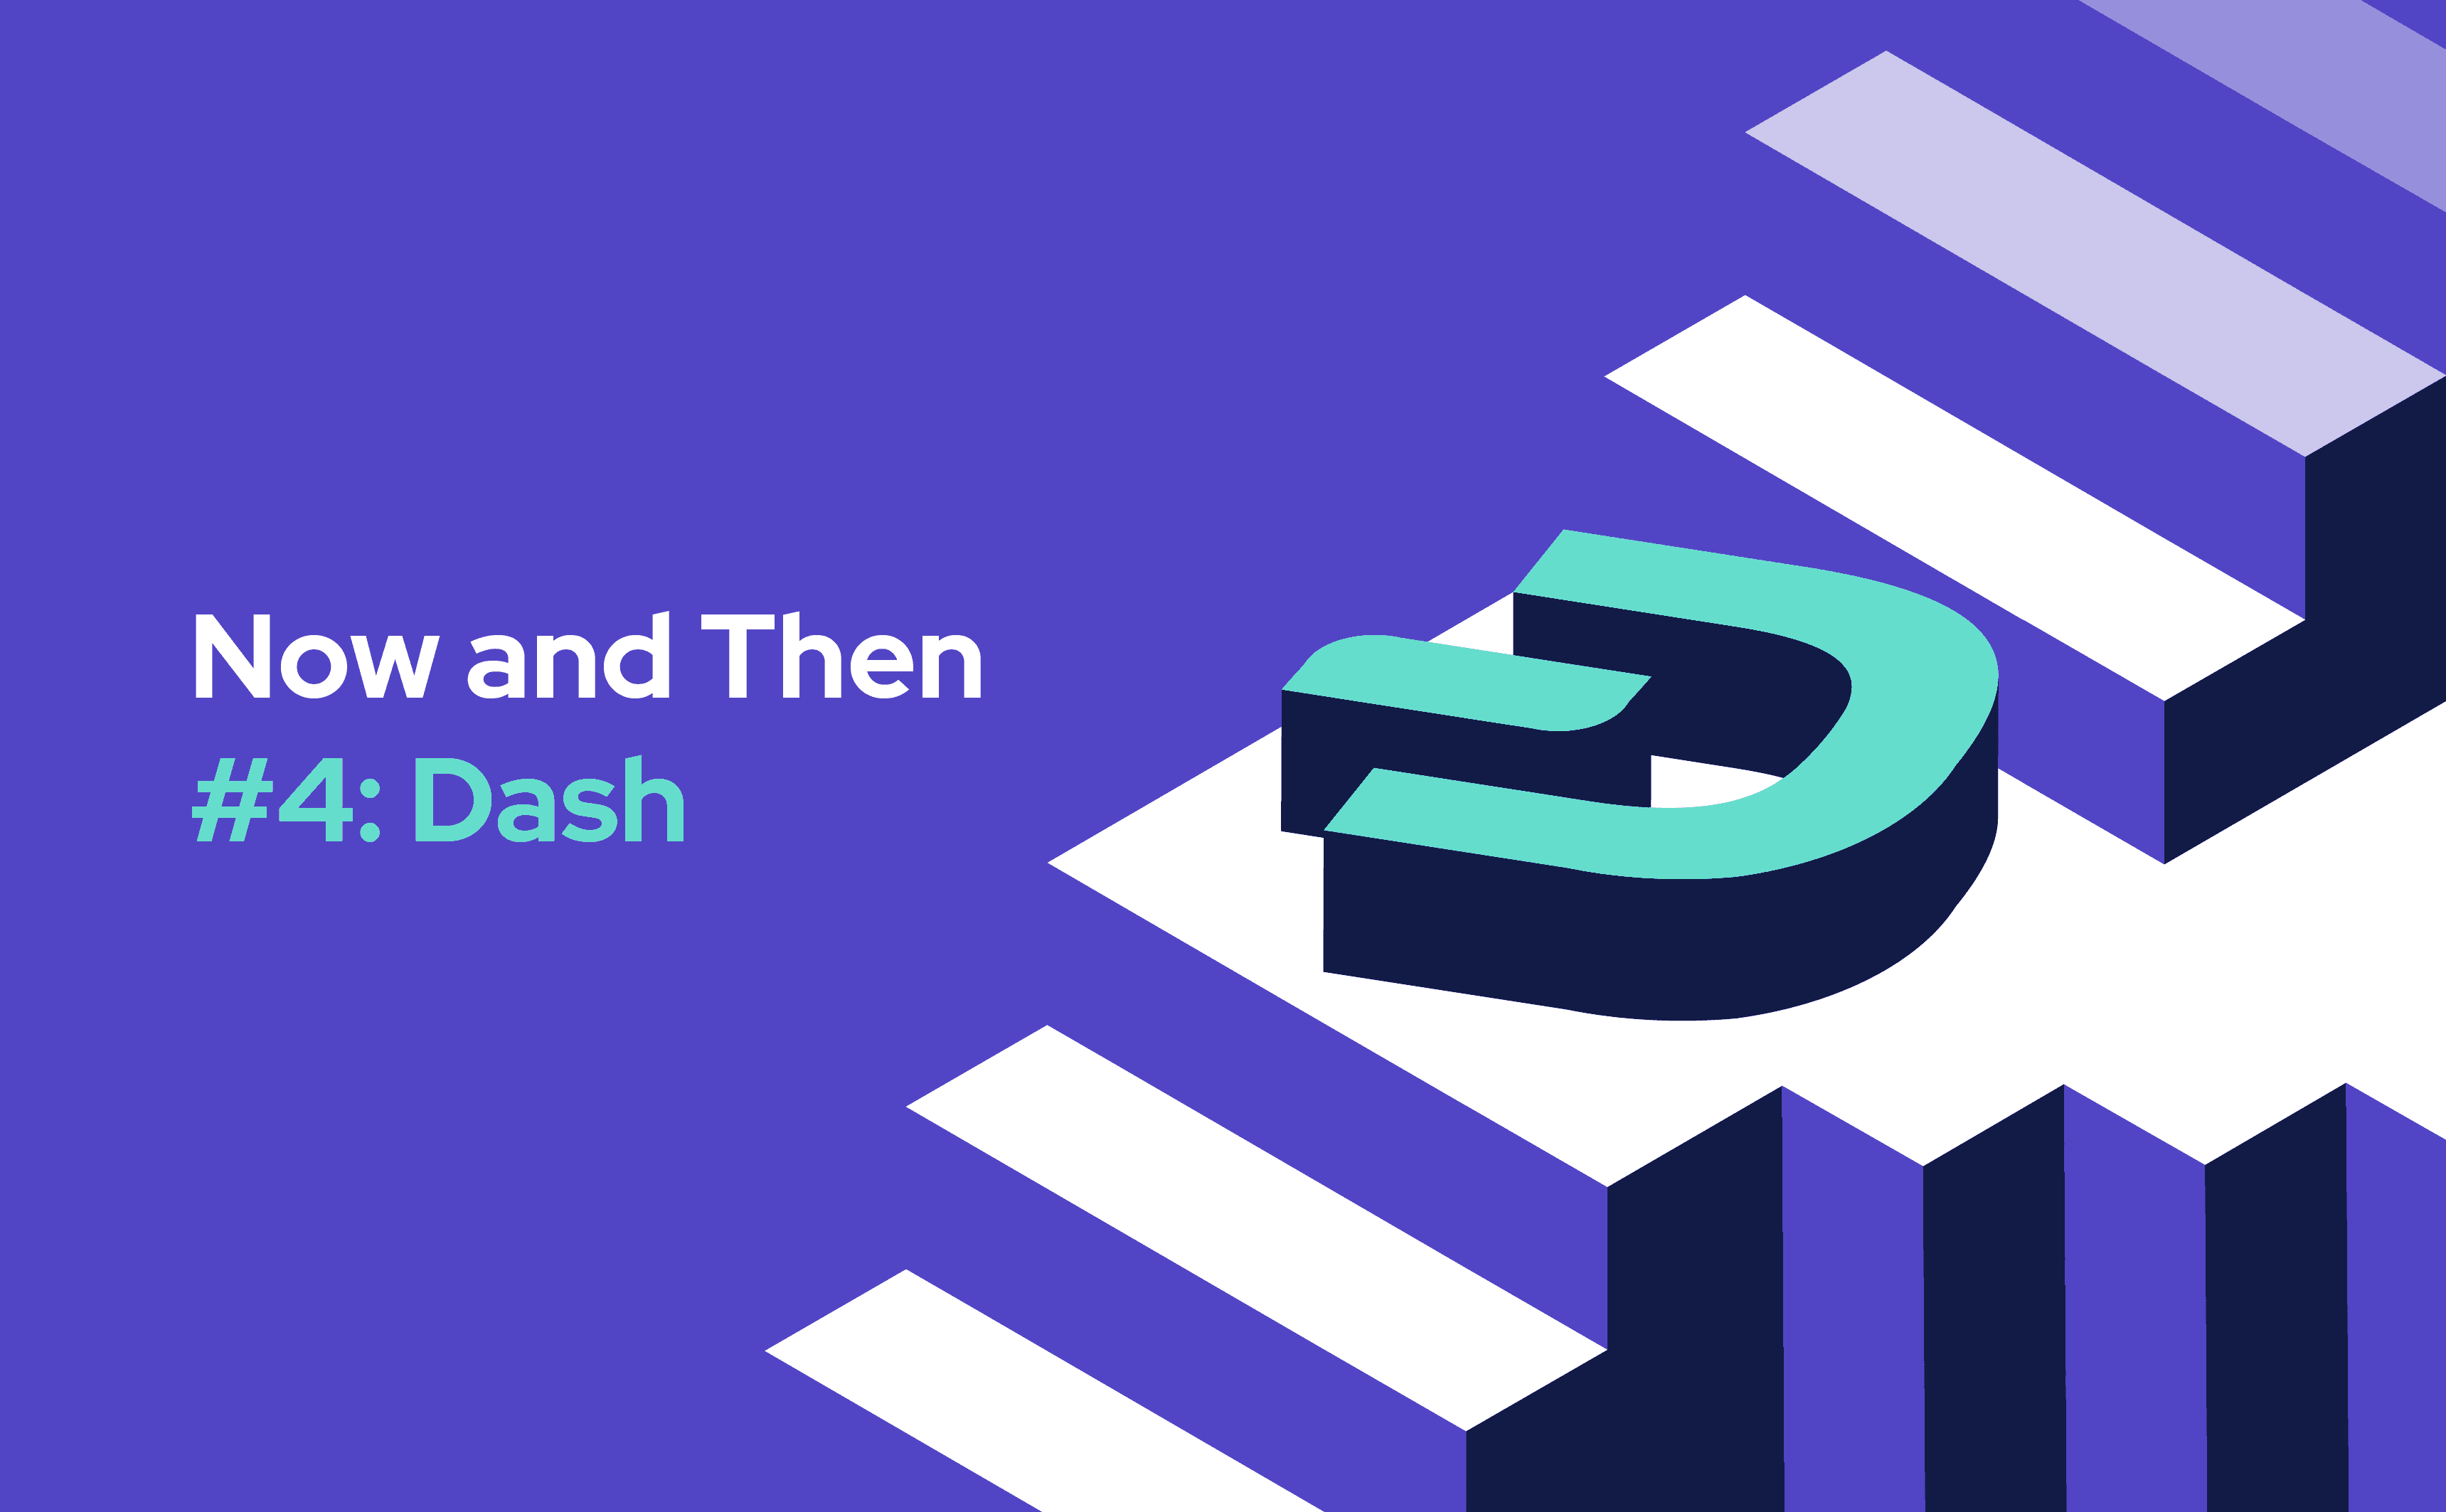 Dash is aanzienlijk geëvolueerd sinds 2014